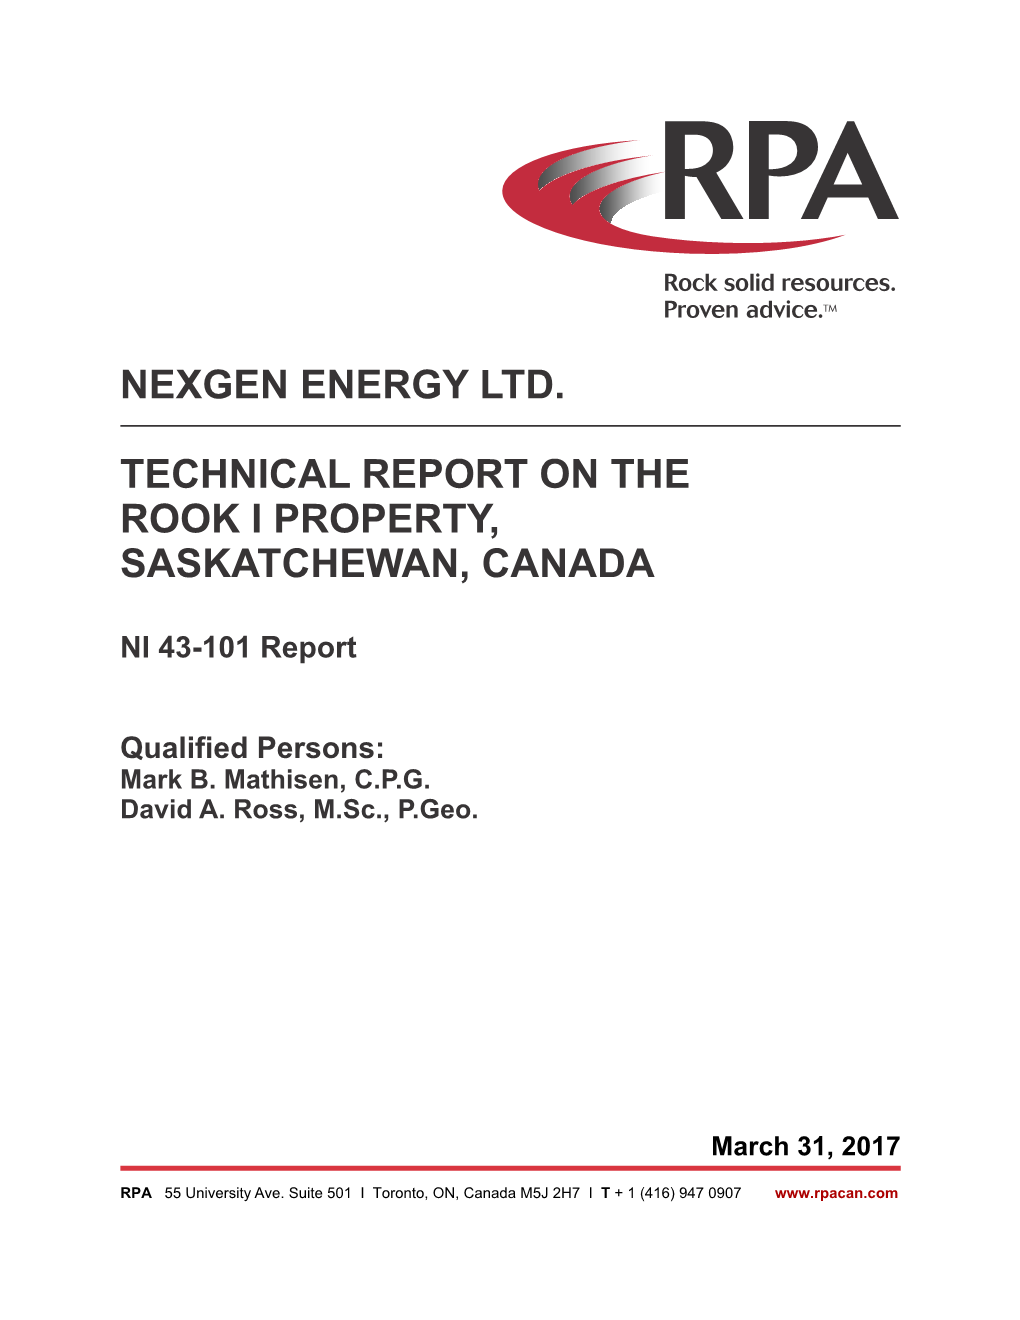 Nexgen Energy Ltd. Technical Report on the Rook I Property, Saskatchewan